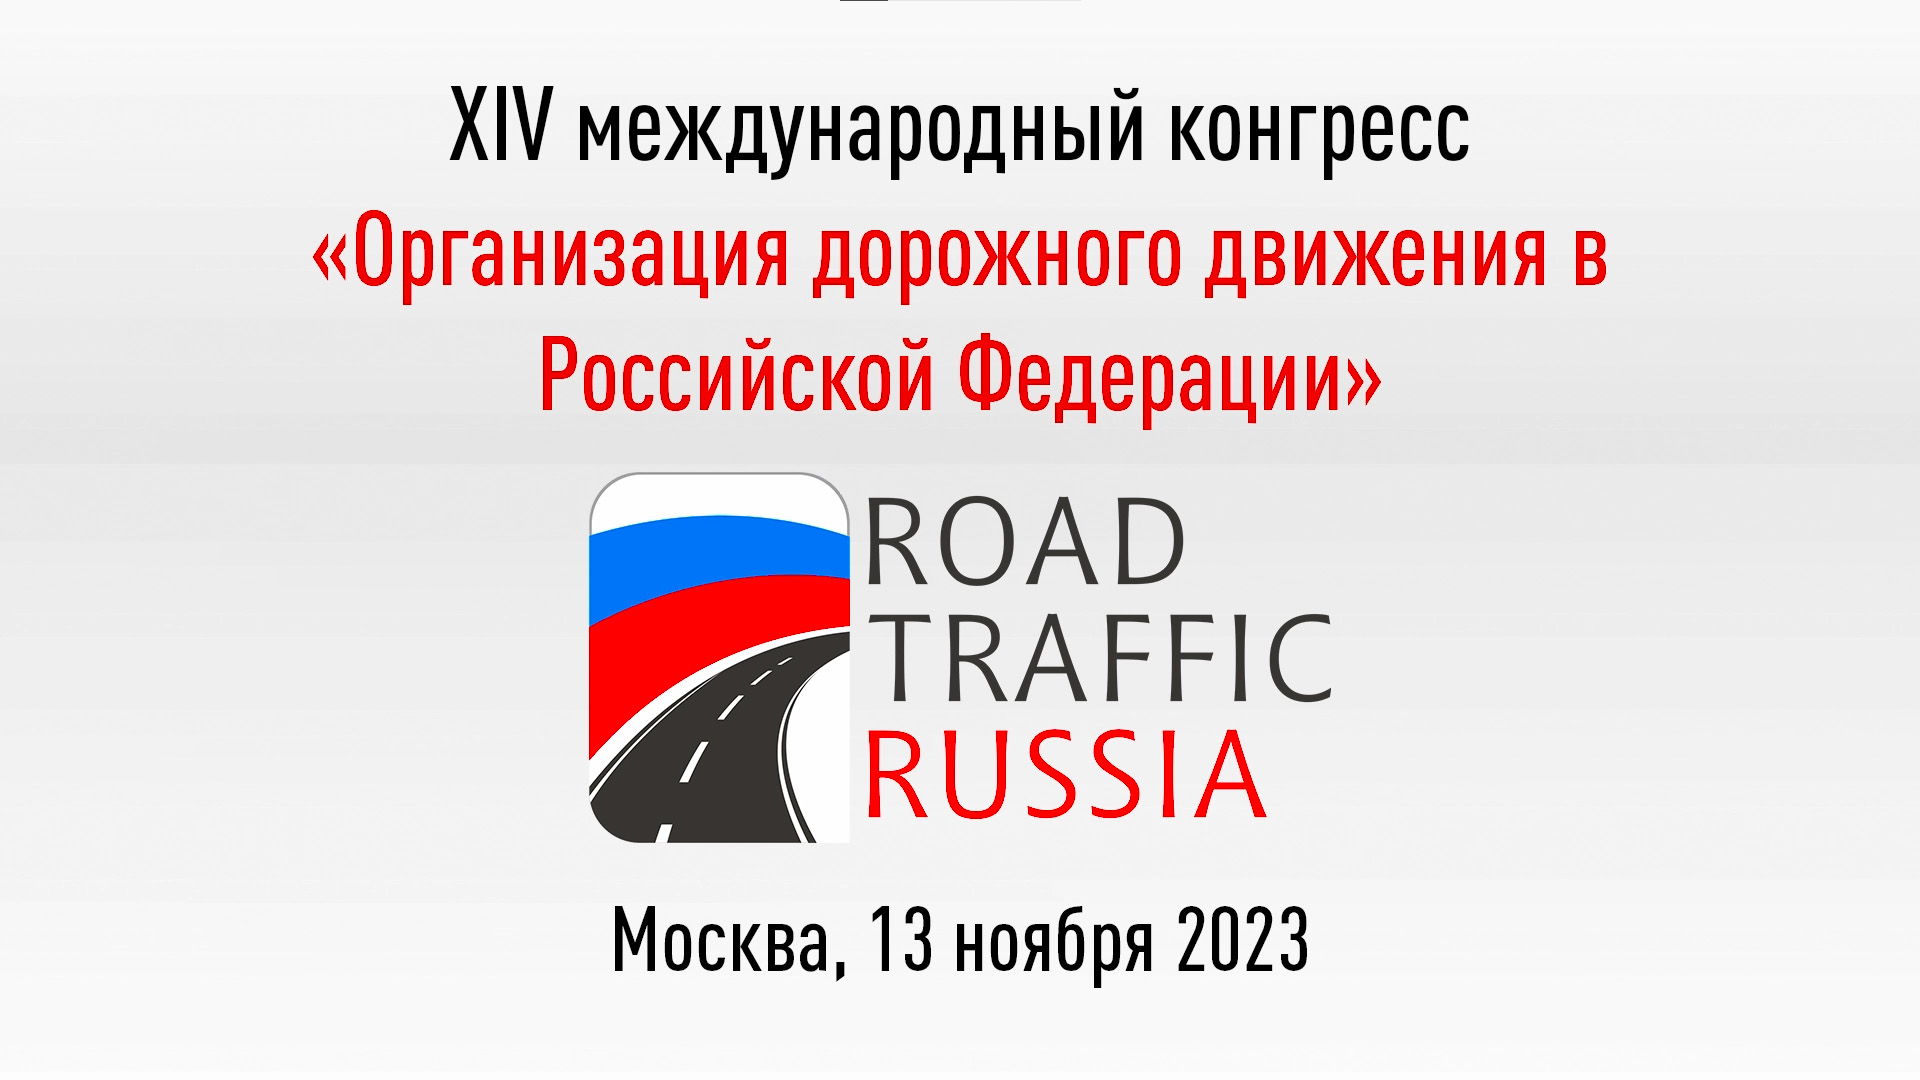 ROAD TRAFFIC RUSSIA 23